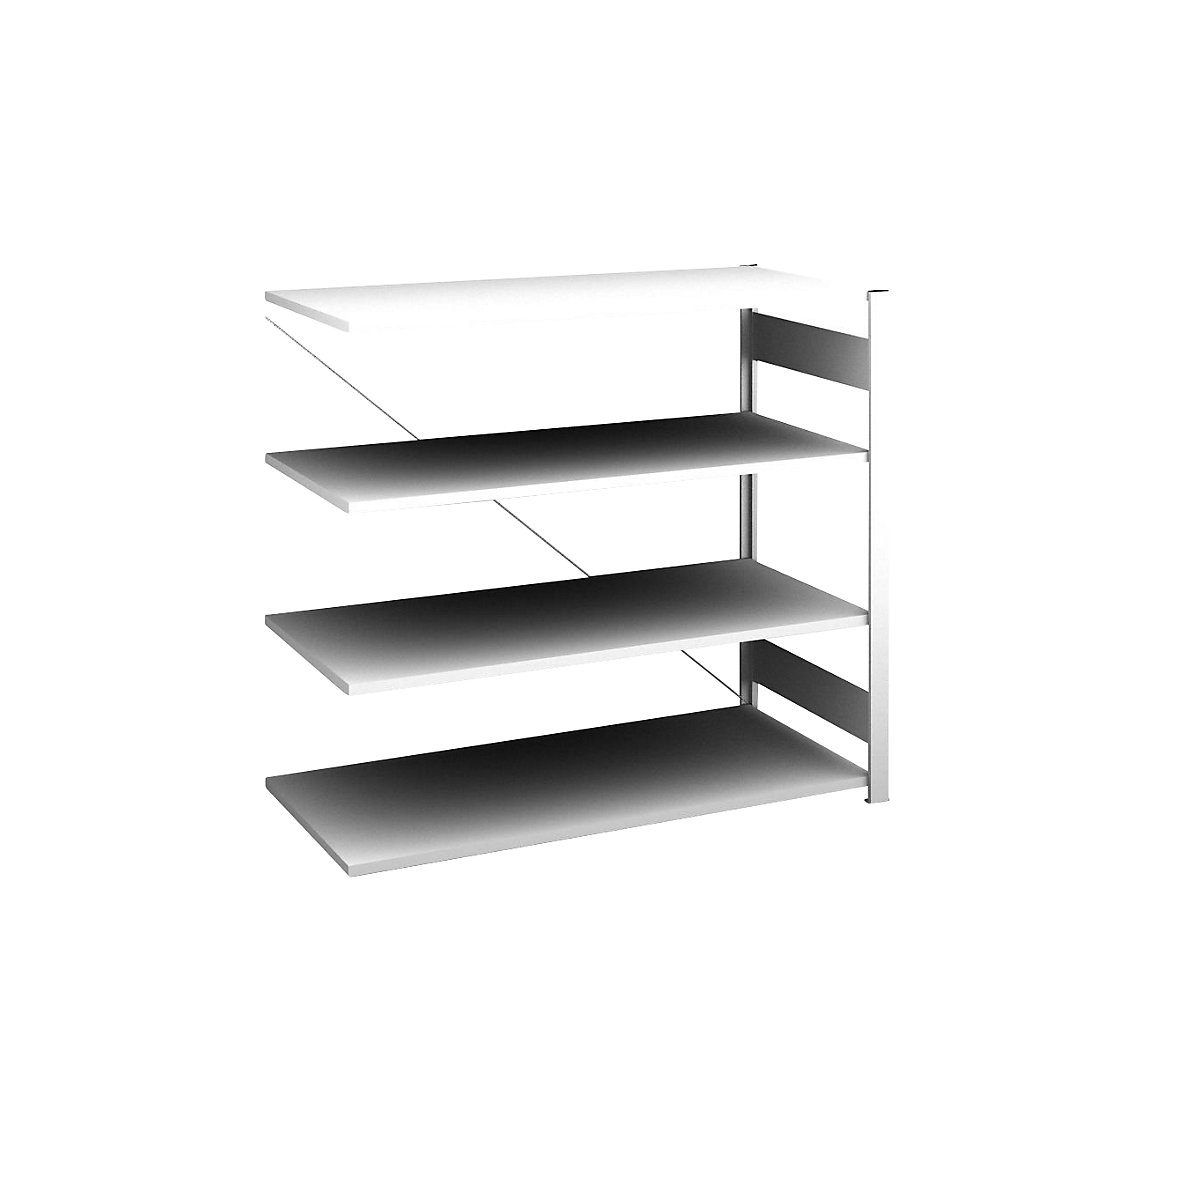 Sideboard shelving unit, light grey – hofe, height 1200 mm, 4 shelves, extension shelf unit, shelf depth 600 mm, max. shelf load 190 kg-2